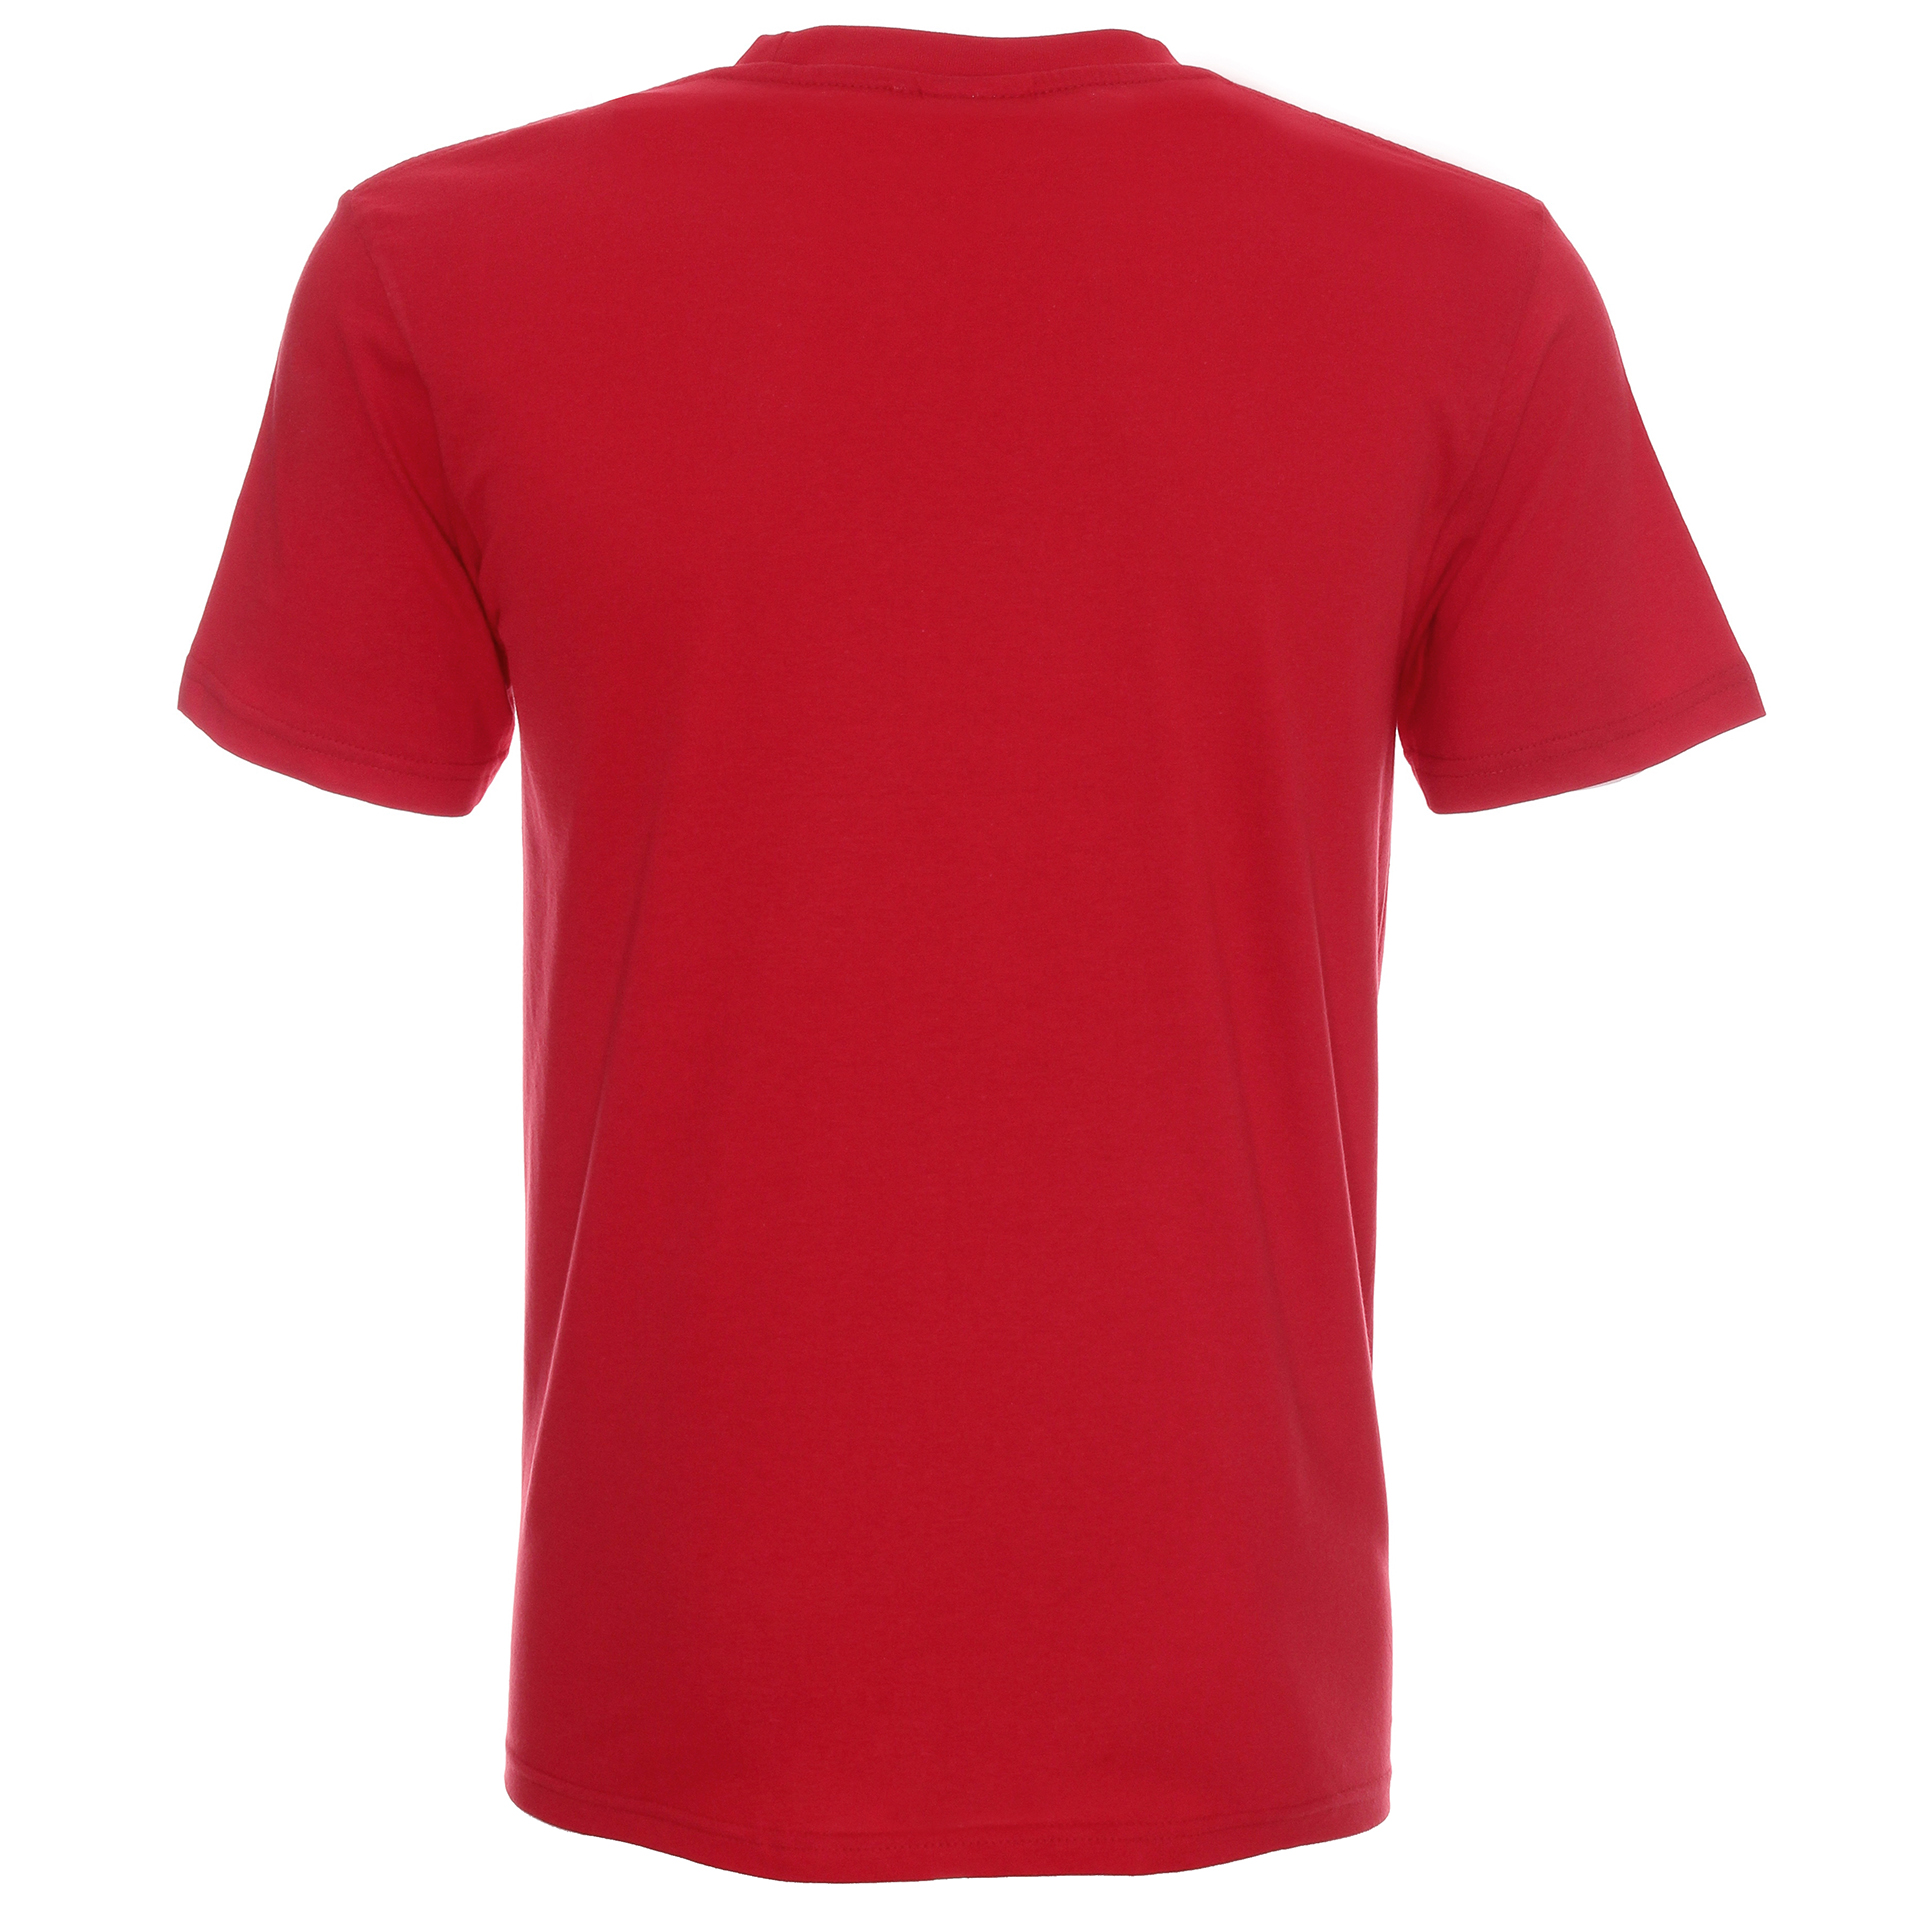 Koszulka Promostars Standard 150 - czerwona